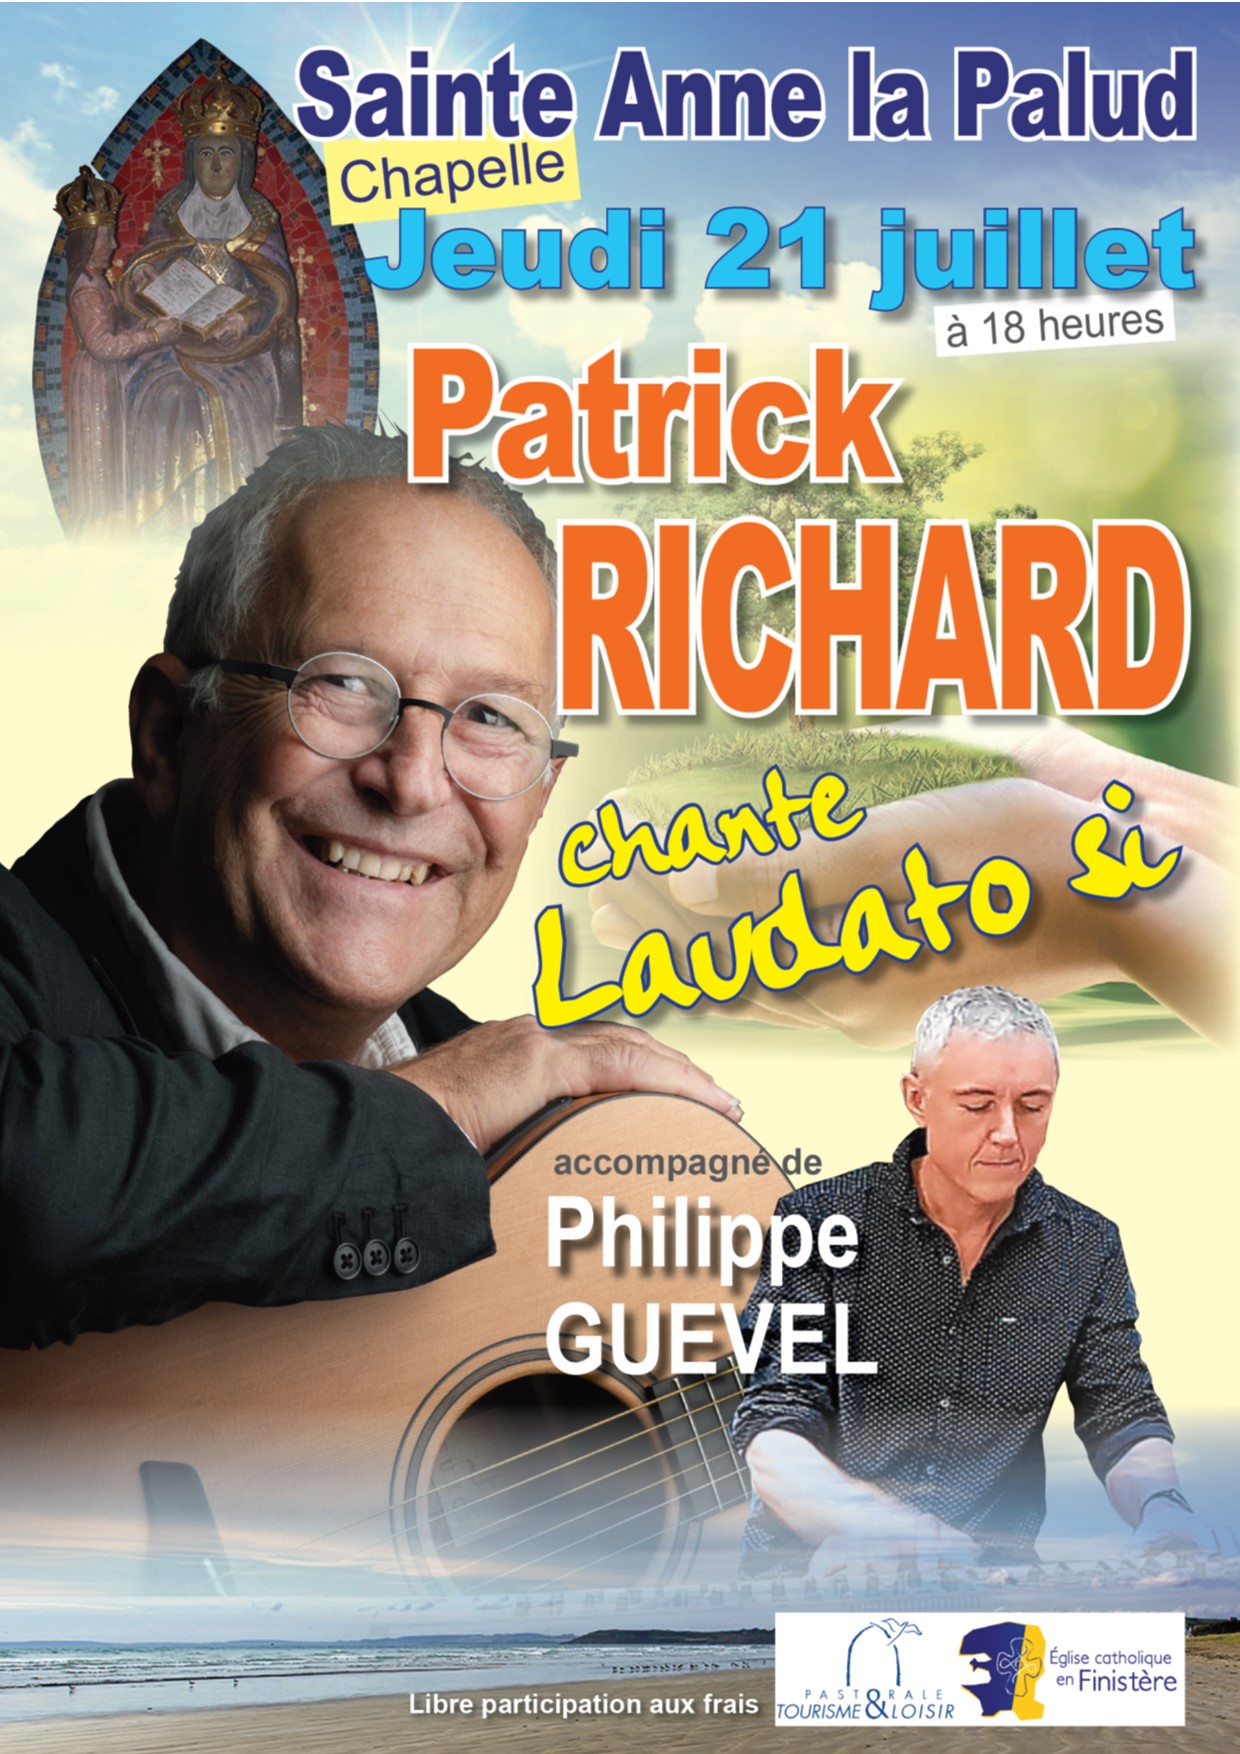 Patrick Richard chante Laudato Si Jeudi 21 juillet à 18h, en la chapelle Sainte-Anne-la-Palud de Plonévez-Porzay